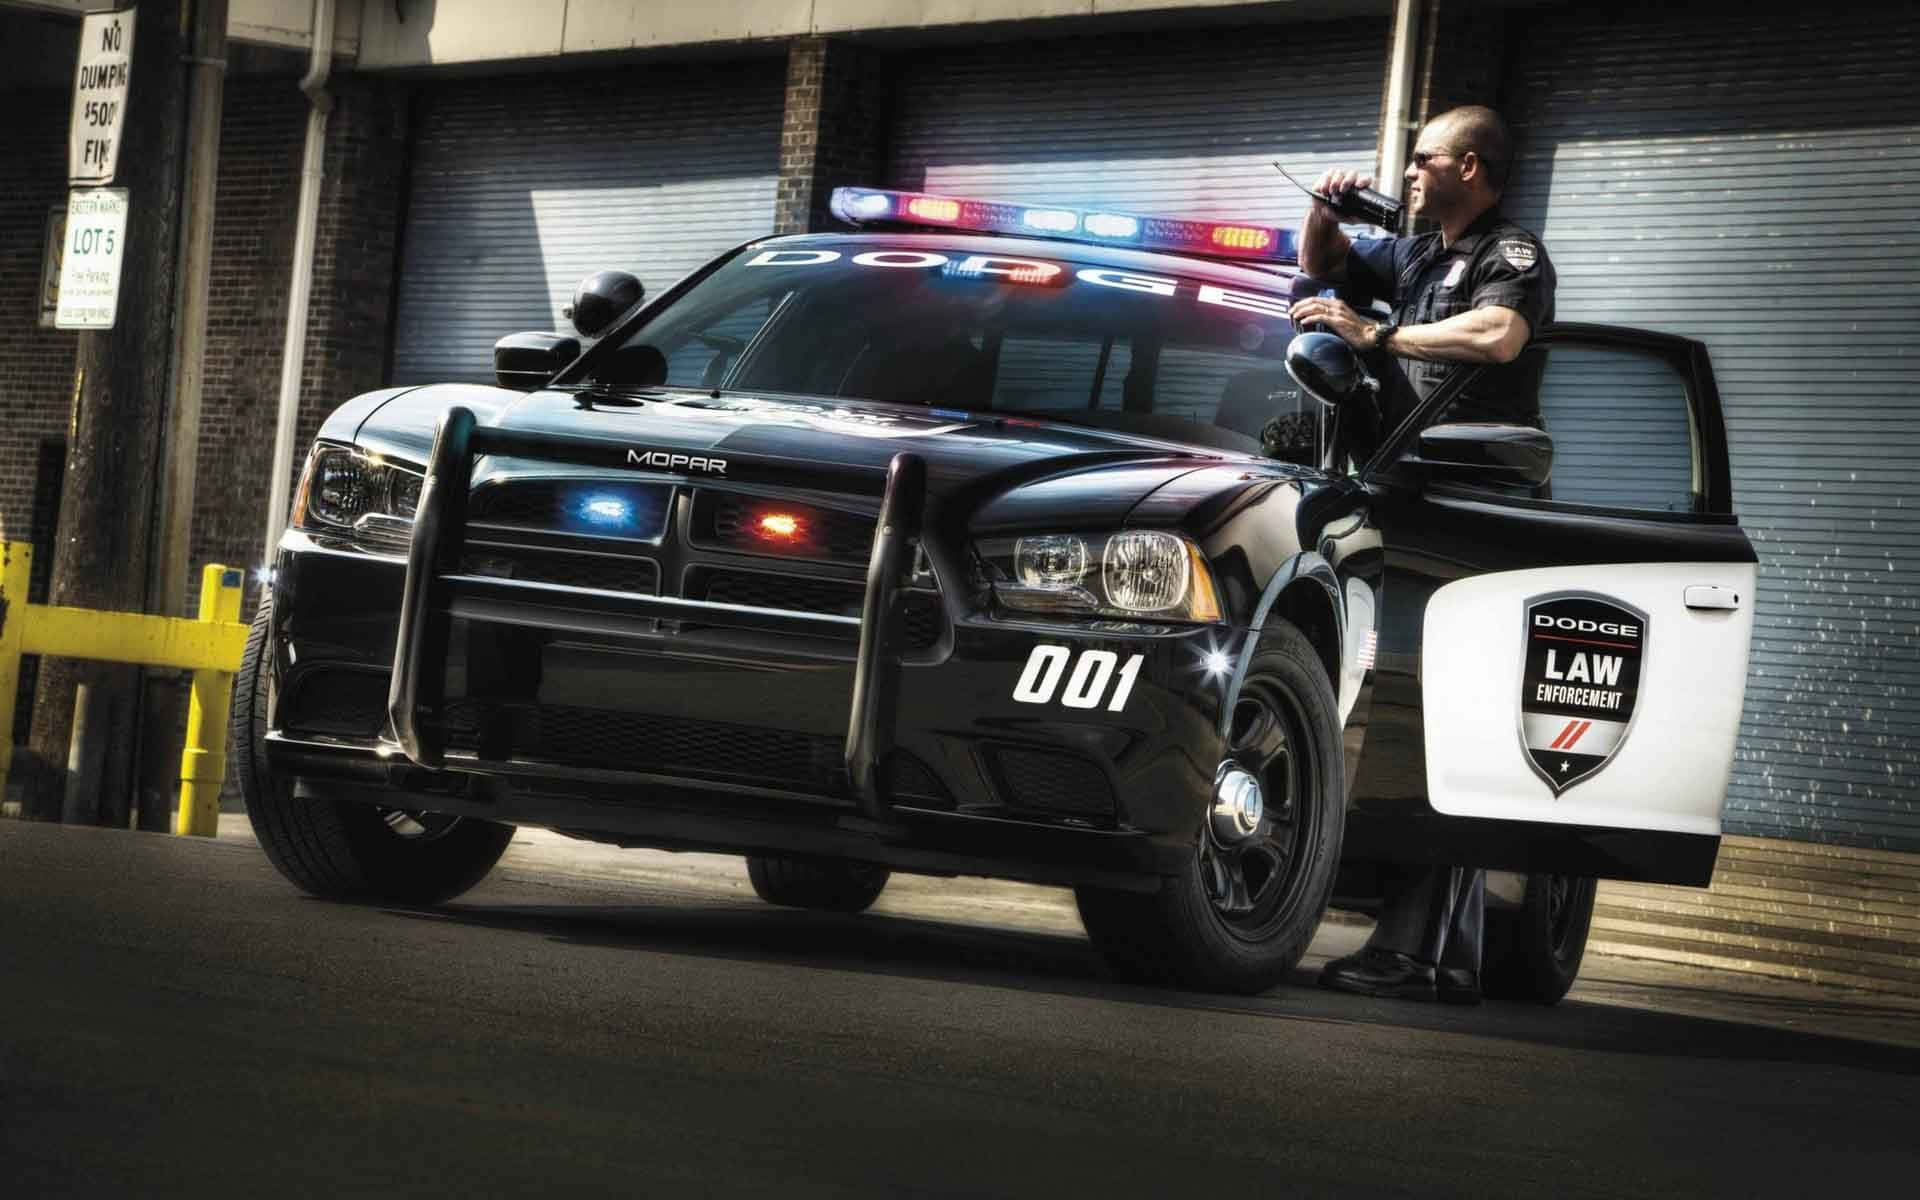 2014 Dodge Charger Pursuit Politibetjent Biljagt Peel og Stick Wall Decal Wallpaper